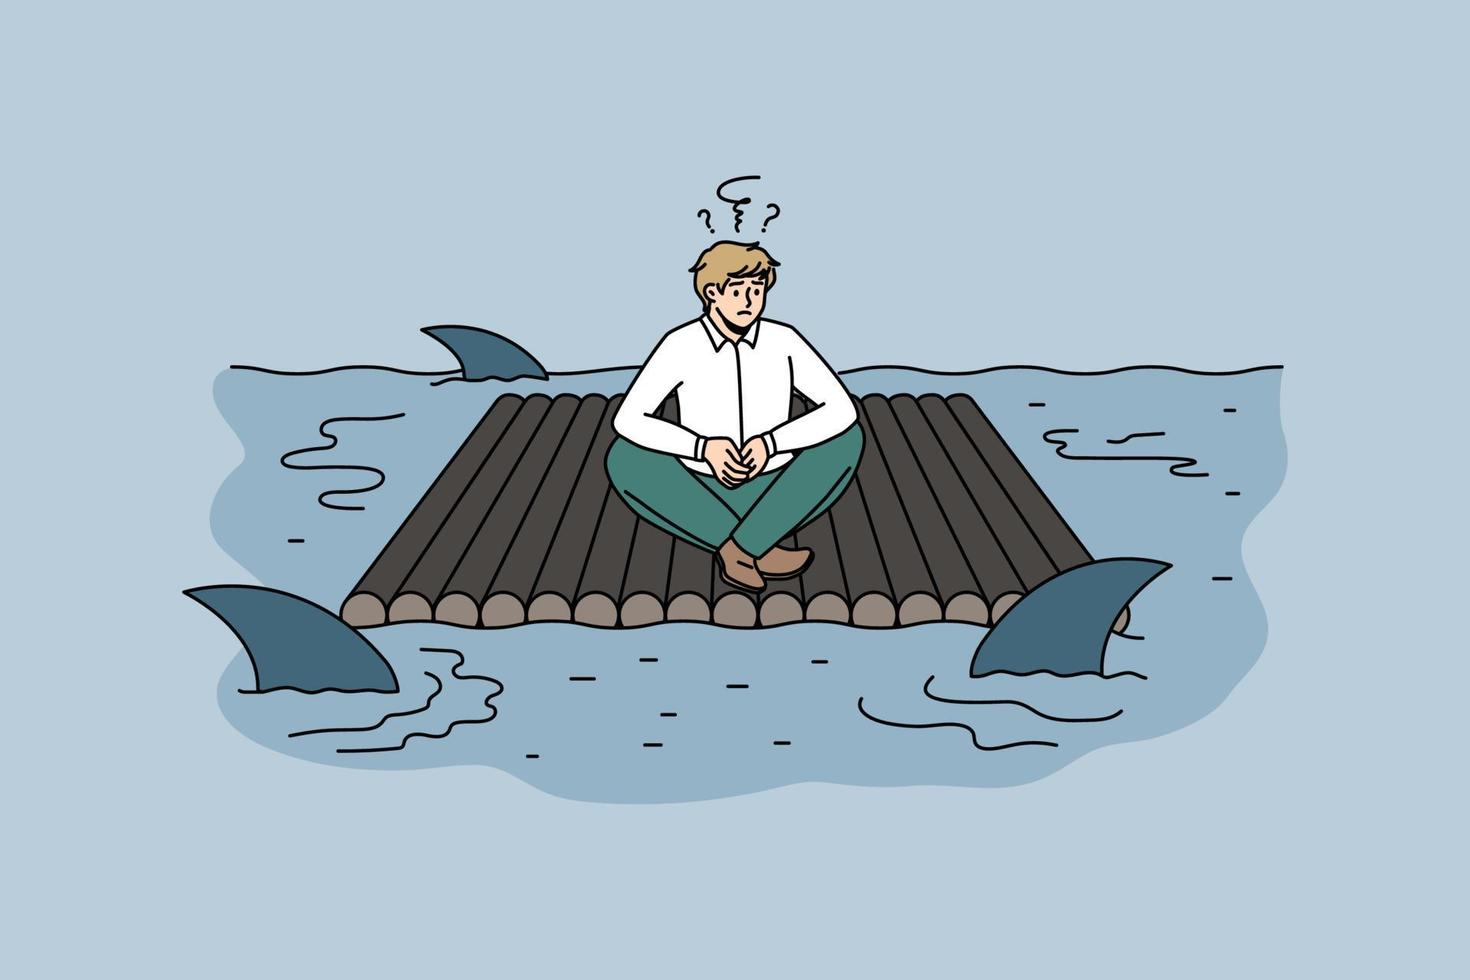 riesgos comerciales y concepto de peligro. hombre de negocios frustrado estresado sentado en una balsa sintiéndose en peligro debido a los tiburones nadando alrededor de la ilustración vectorial vector